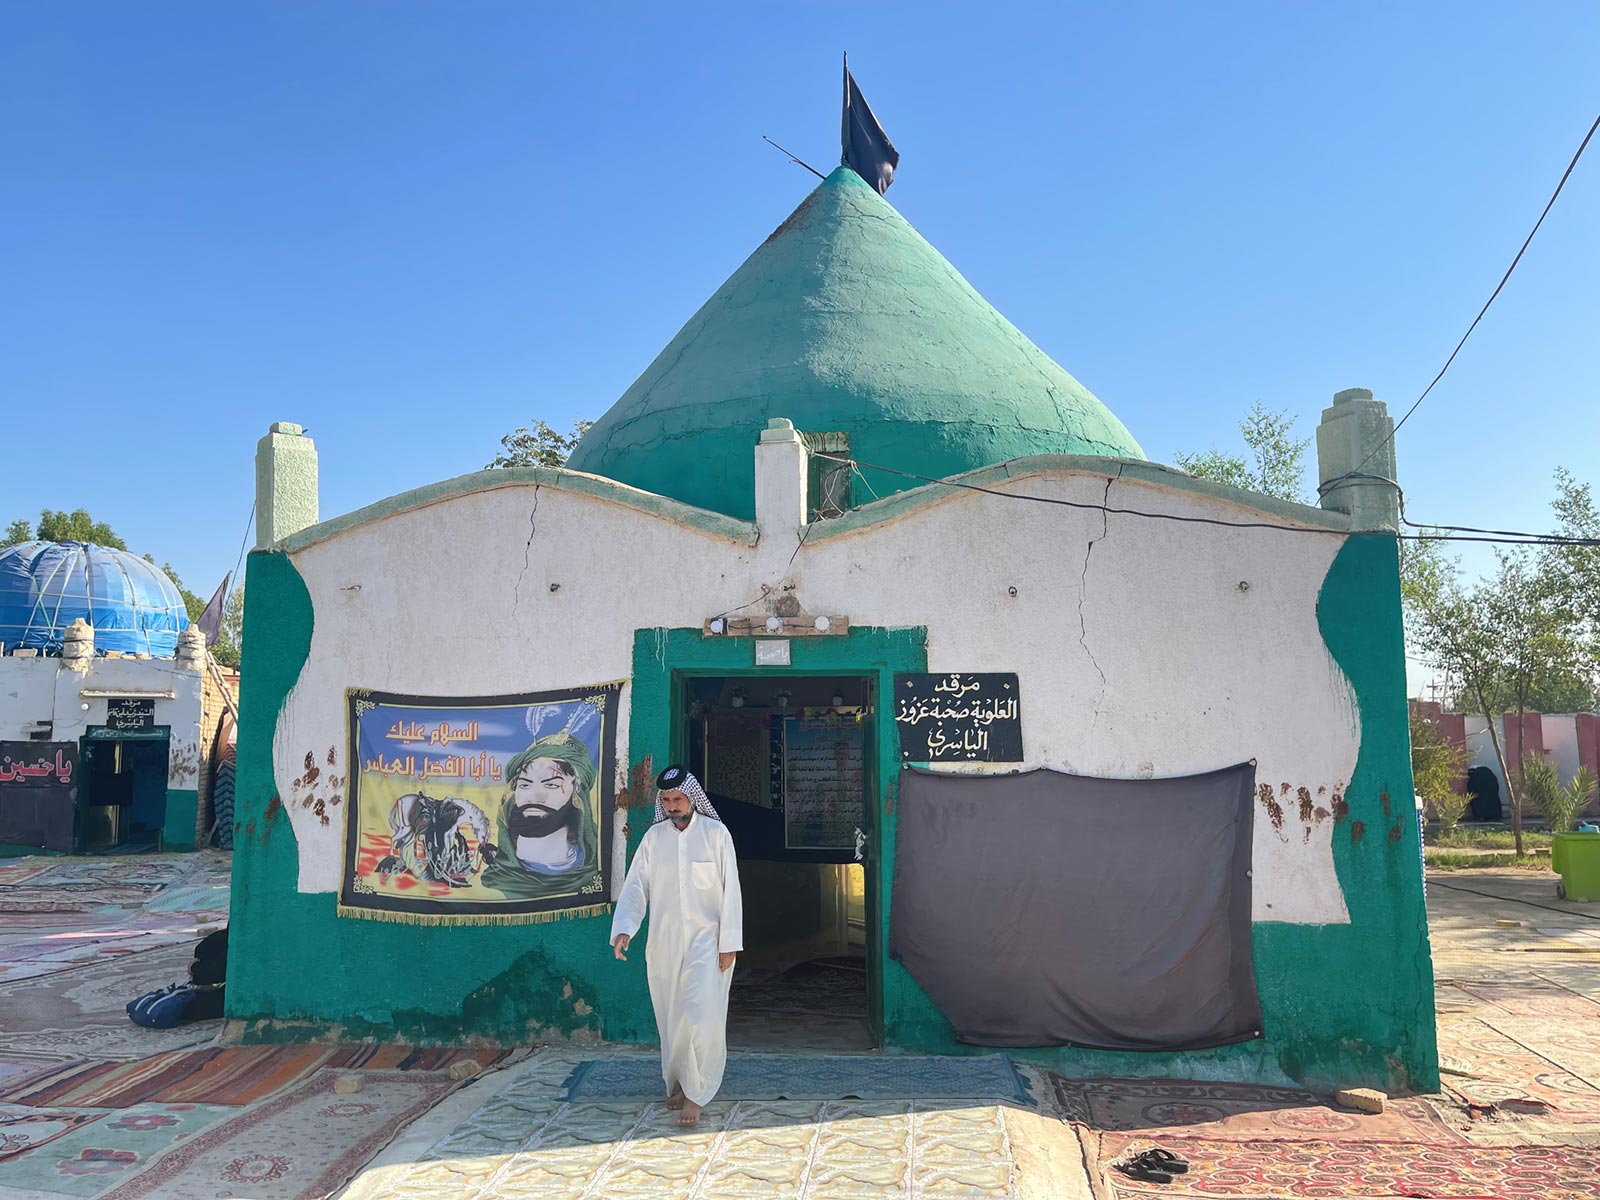 Alhamza Alsharqiren emaztearen, Diwaniya ermita